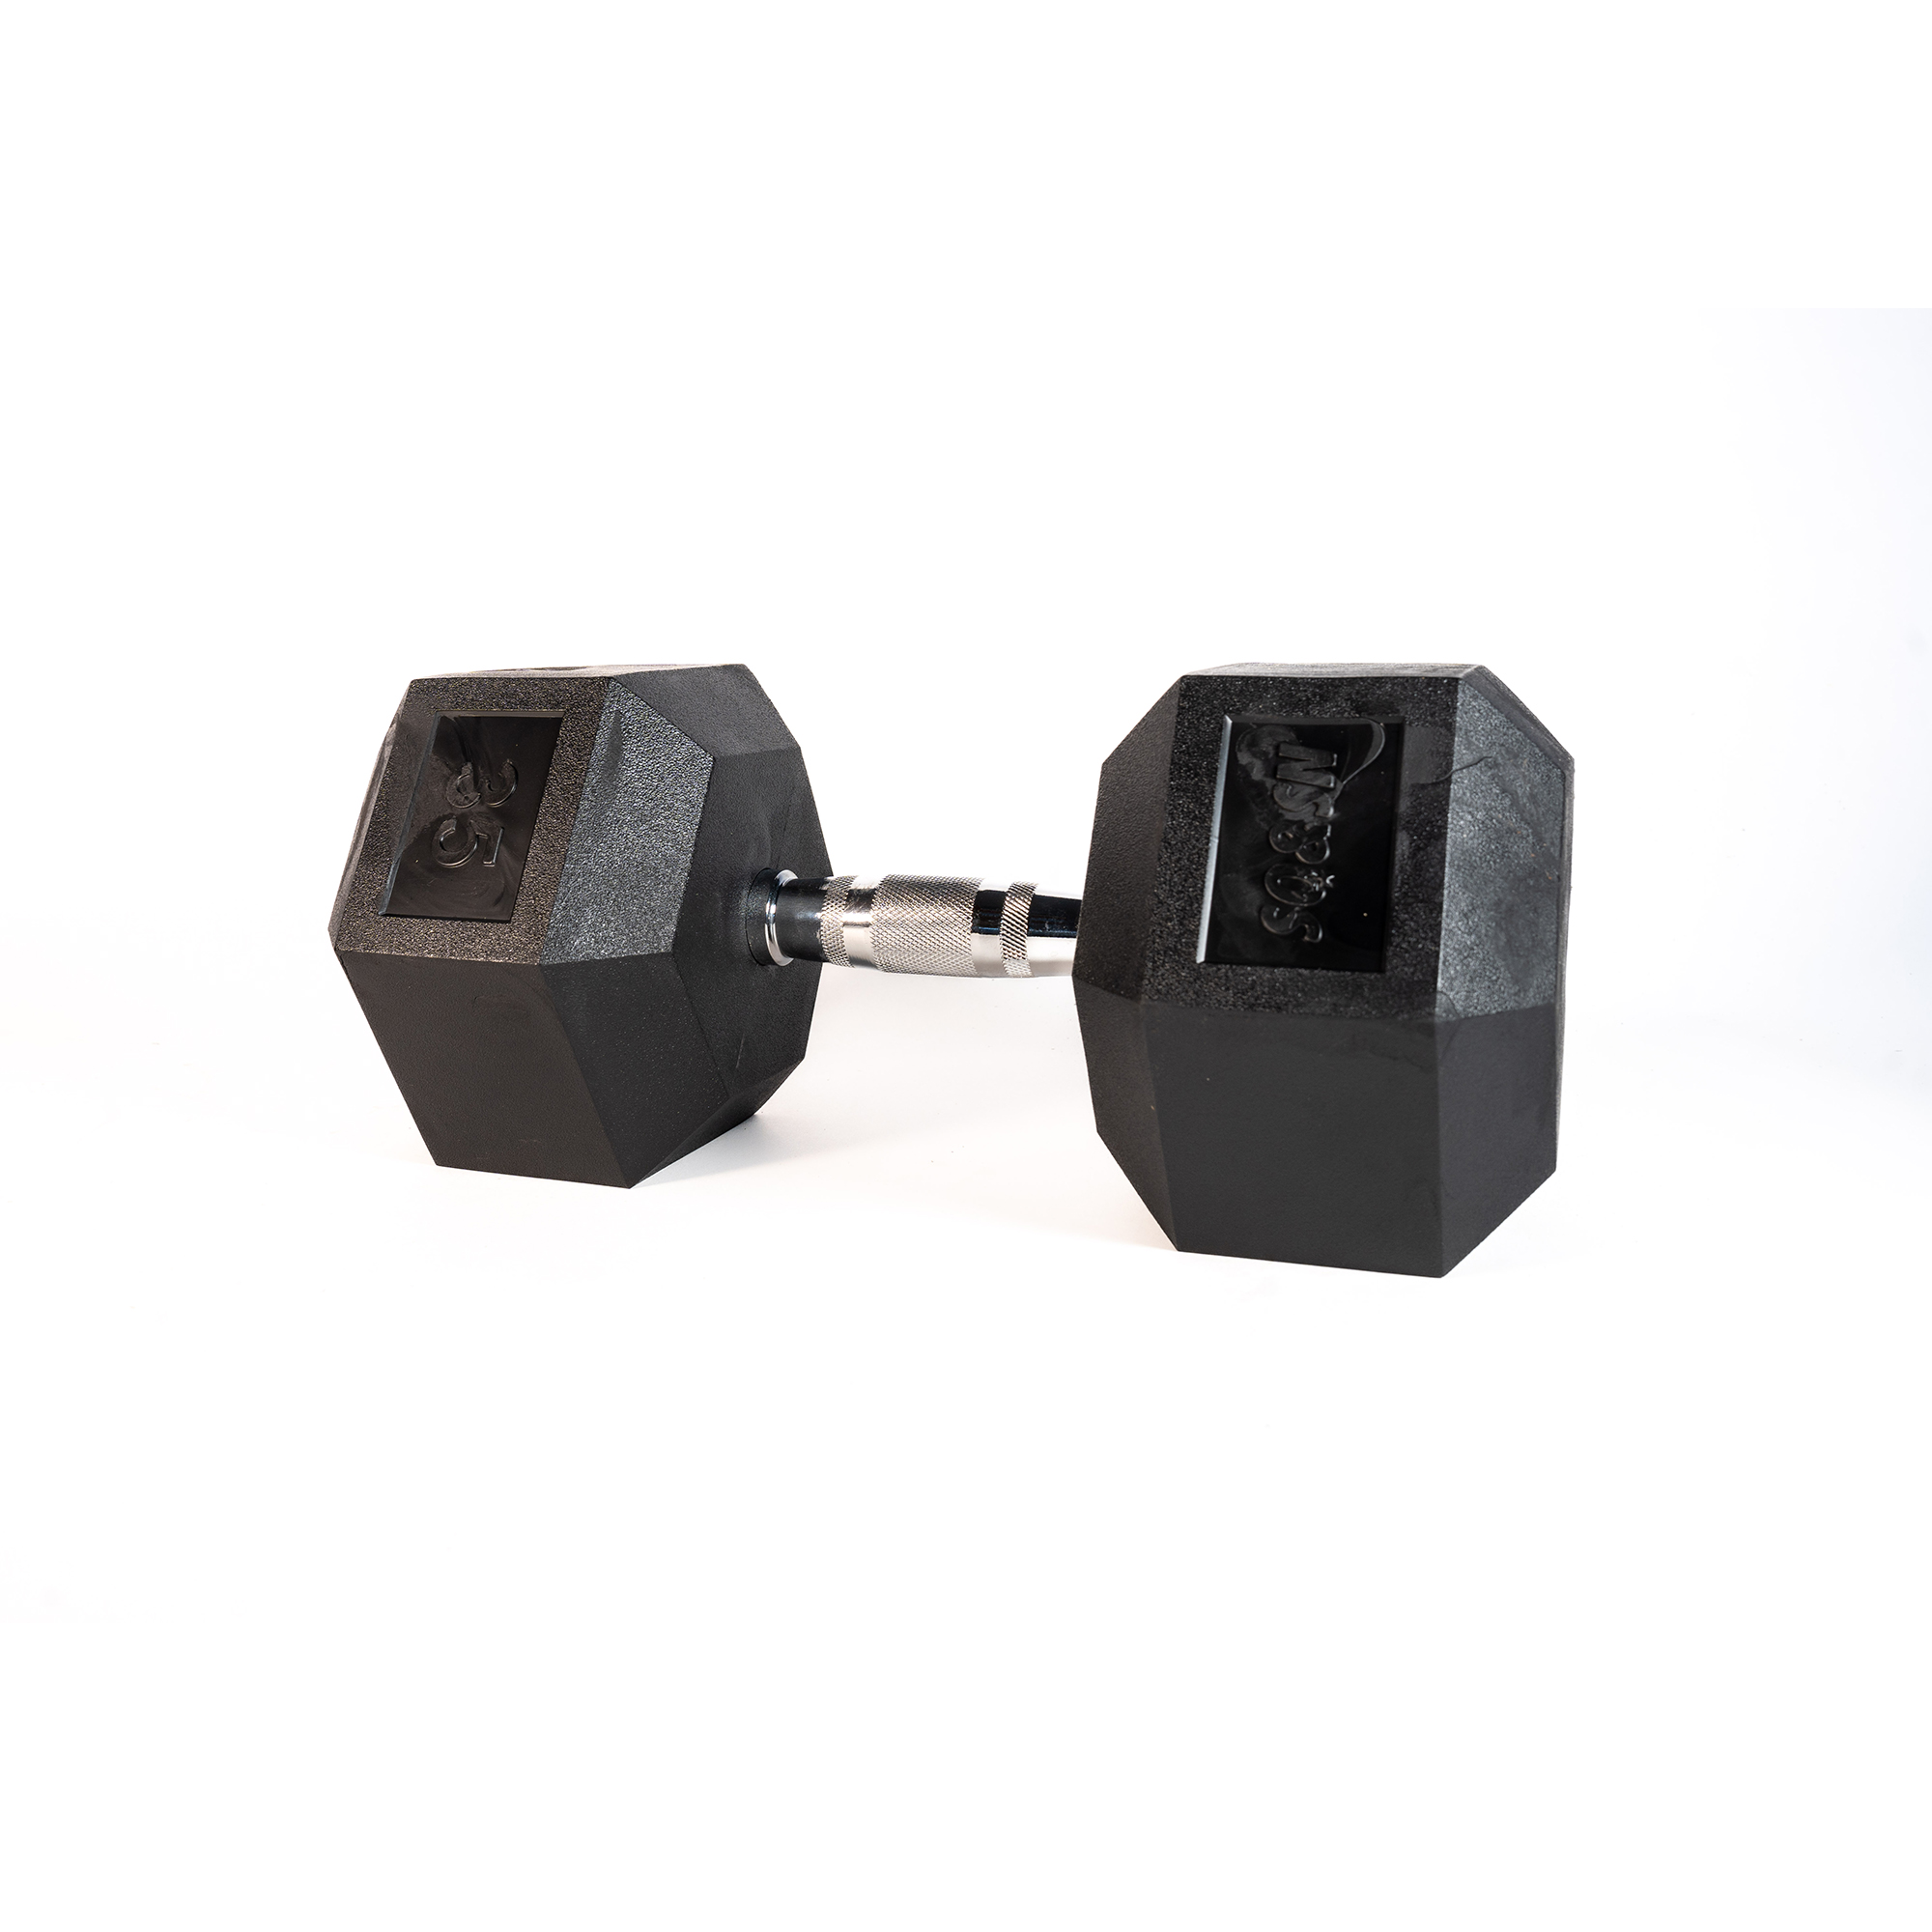 Brug SQ&SN Hexagon Håndvægt (35 kg) med forkromet greb. Udstyr til crossfit træning, styrketræning og funktionel træning til en forbedret oplevelse